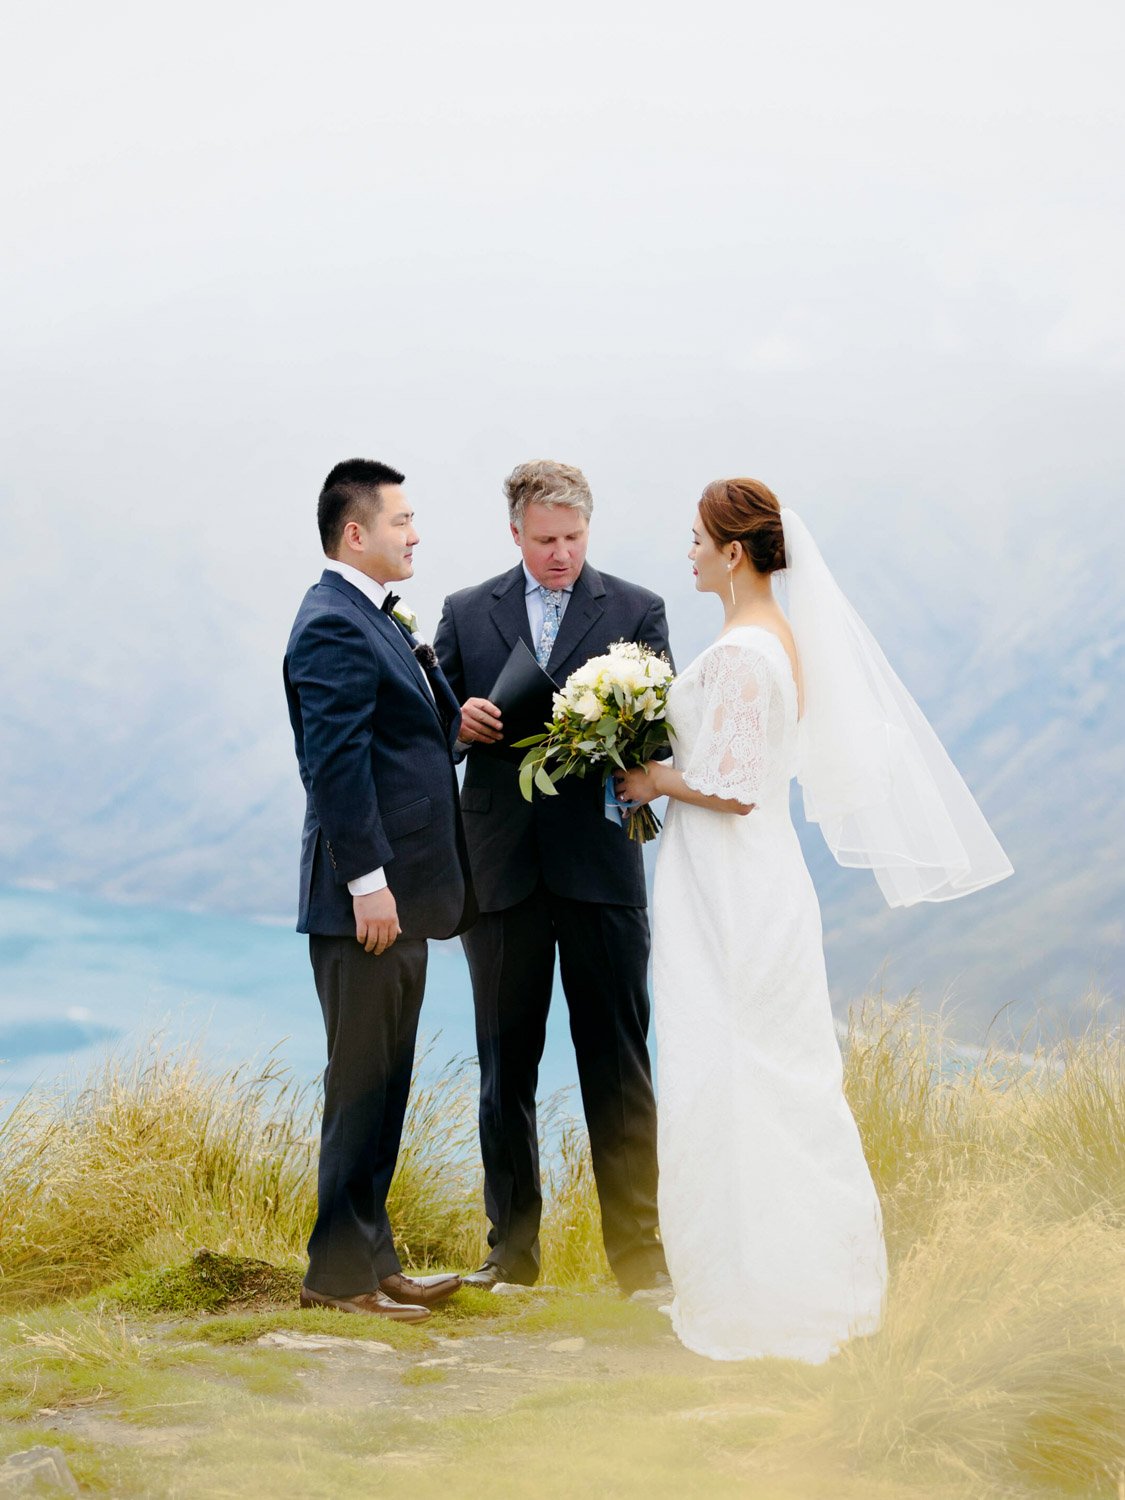 Queenstownn Canyons Lodge outdoor wedding elopement photographer Panda Bay Films.jpg